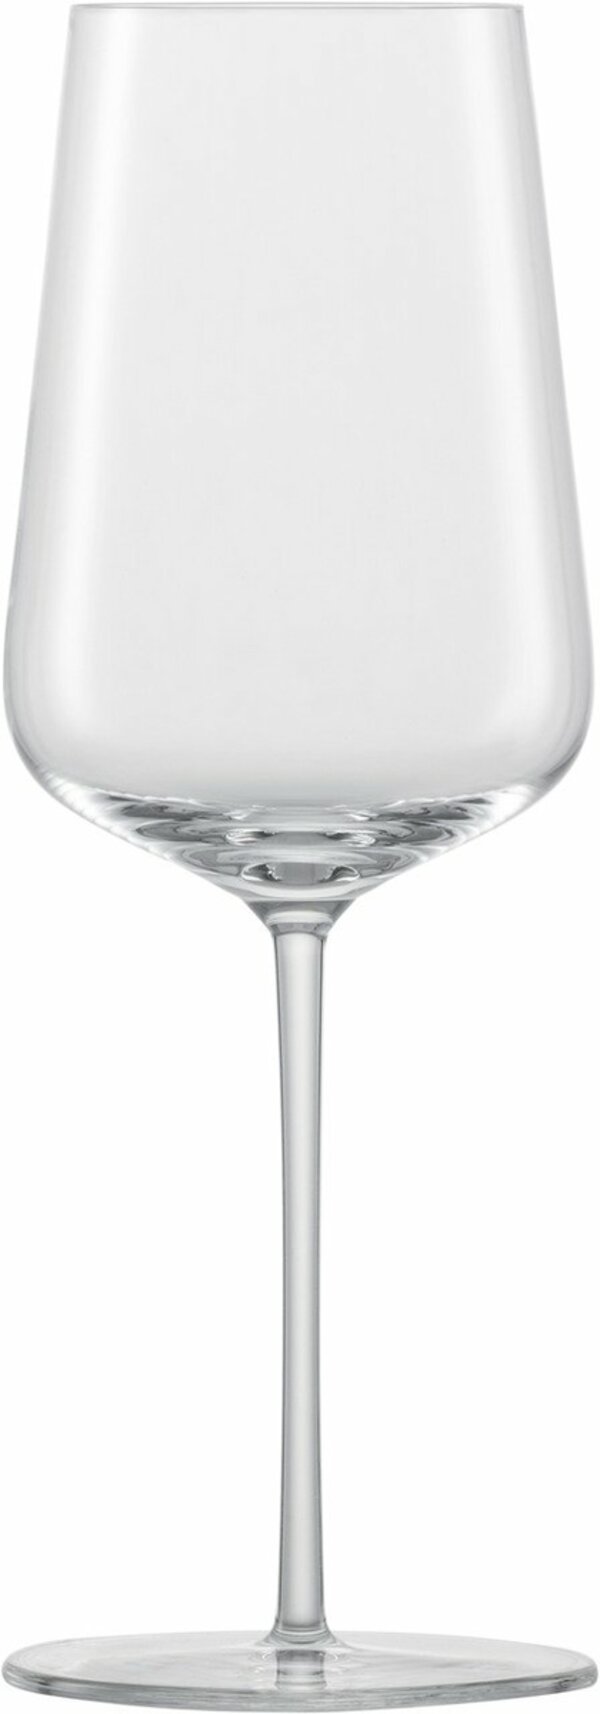 Bild 1 von SCHOTT ZWIESEL Chardonnayglas VERVINO, Kristallglas